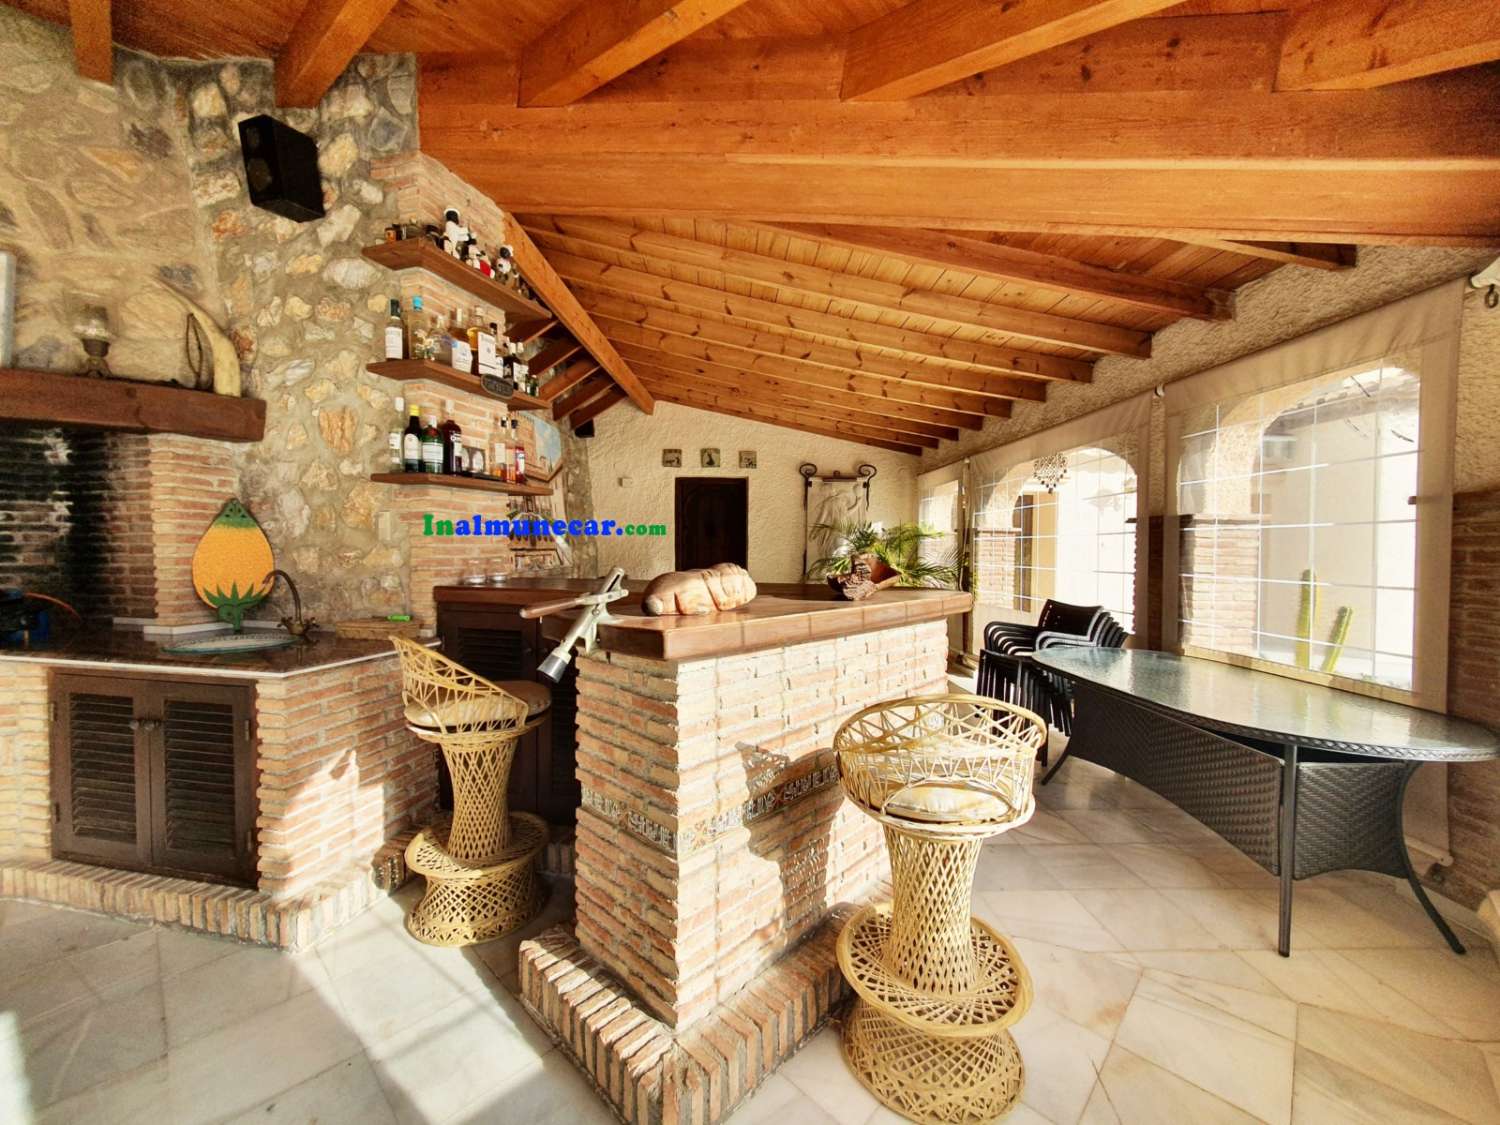 Exklusive Villa zum Verkauf in einer fantastischen Lage in Cotobro, Almuñecar.